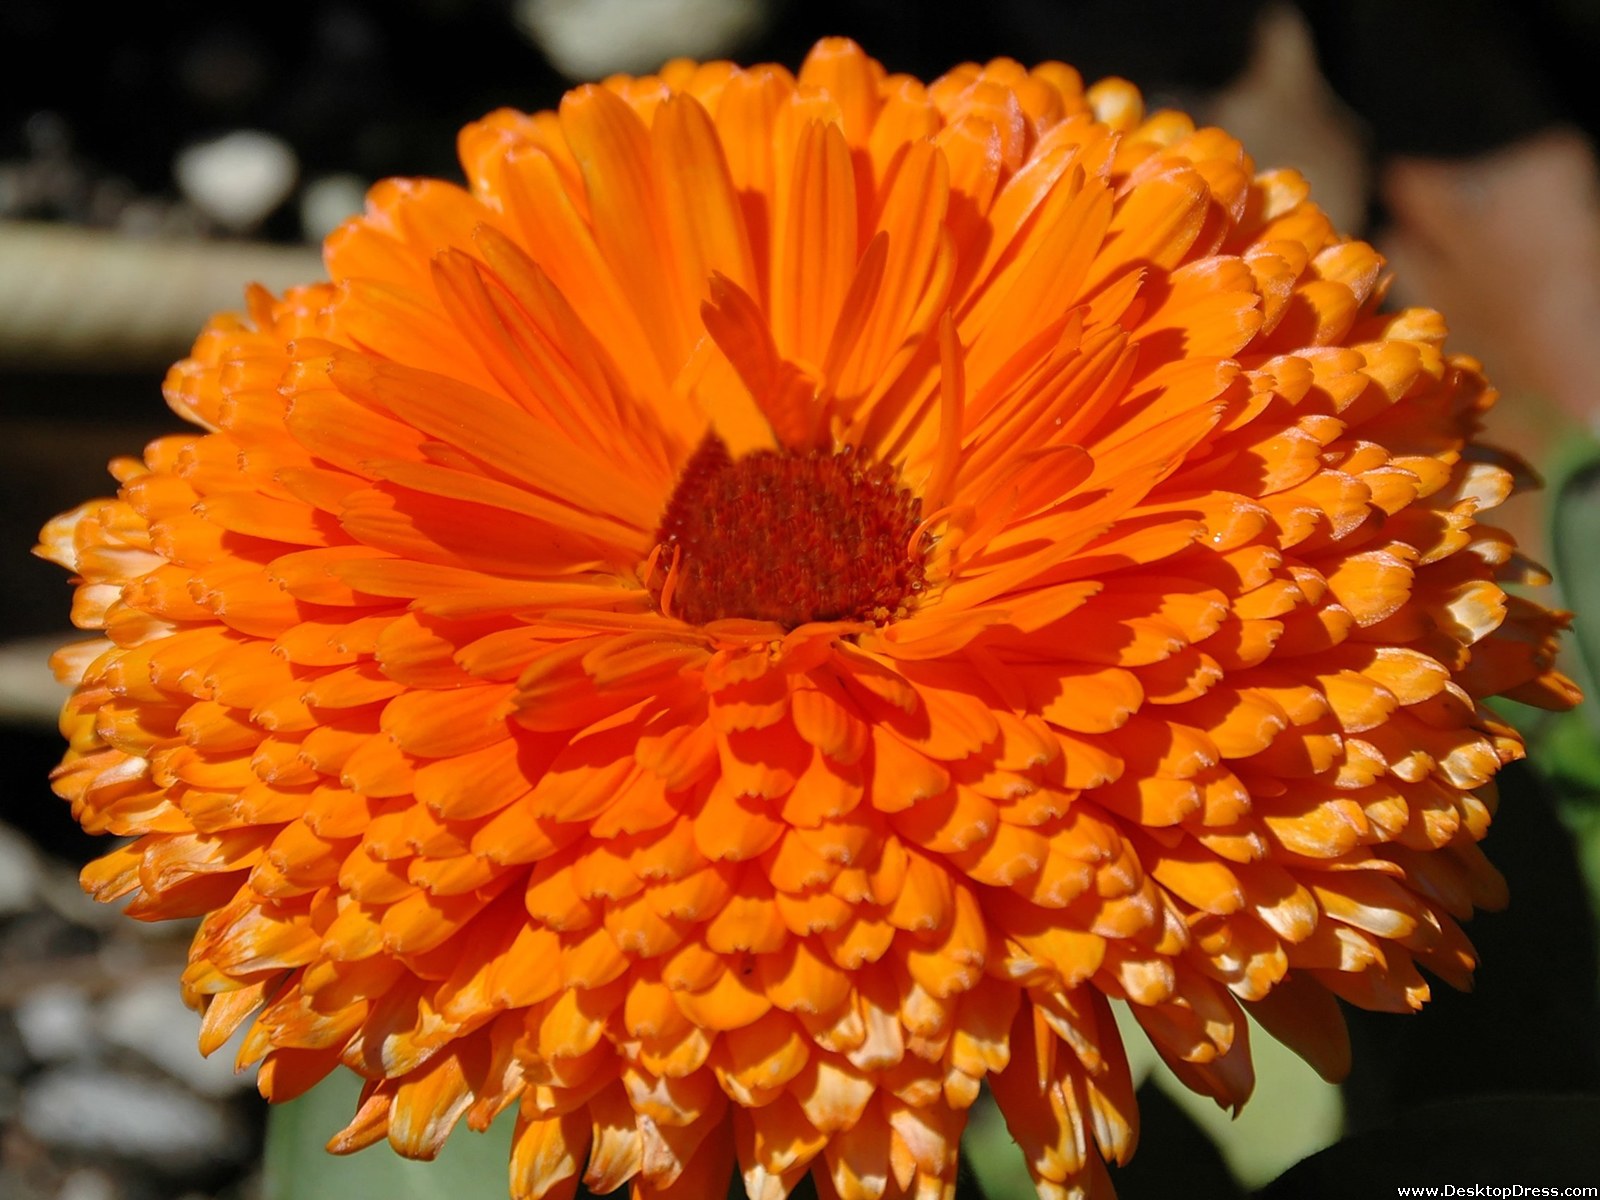 Desktop Wallpapers » Flowers Backgrounds » Fresh Orange Flower » www ...